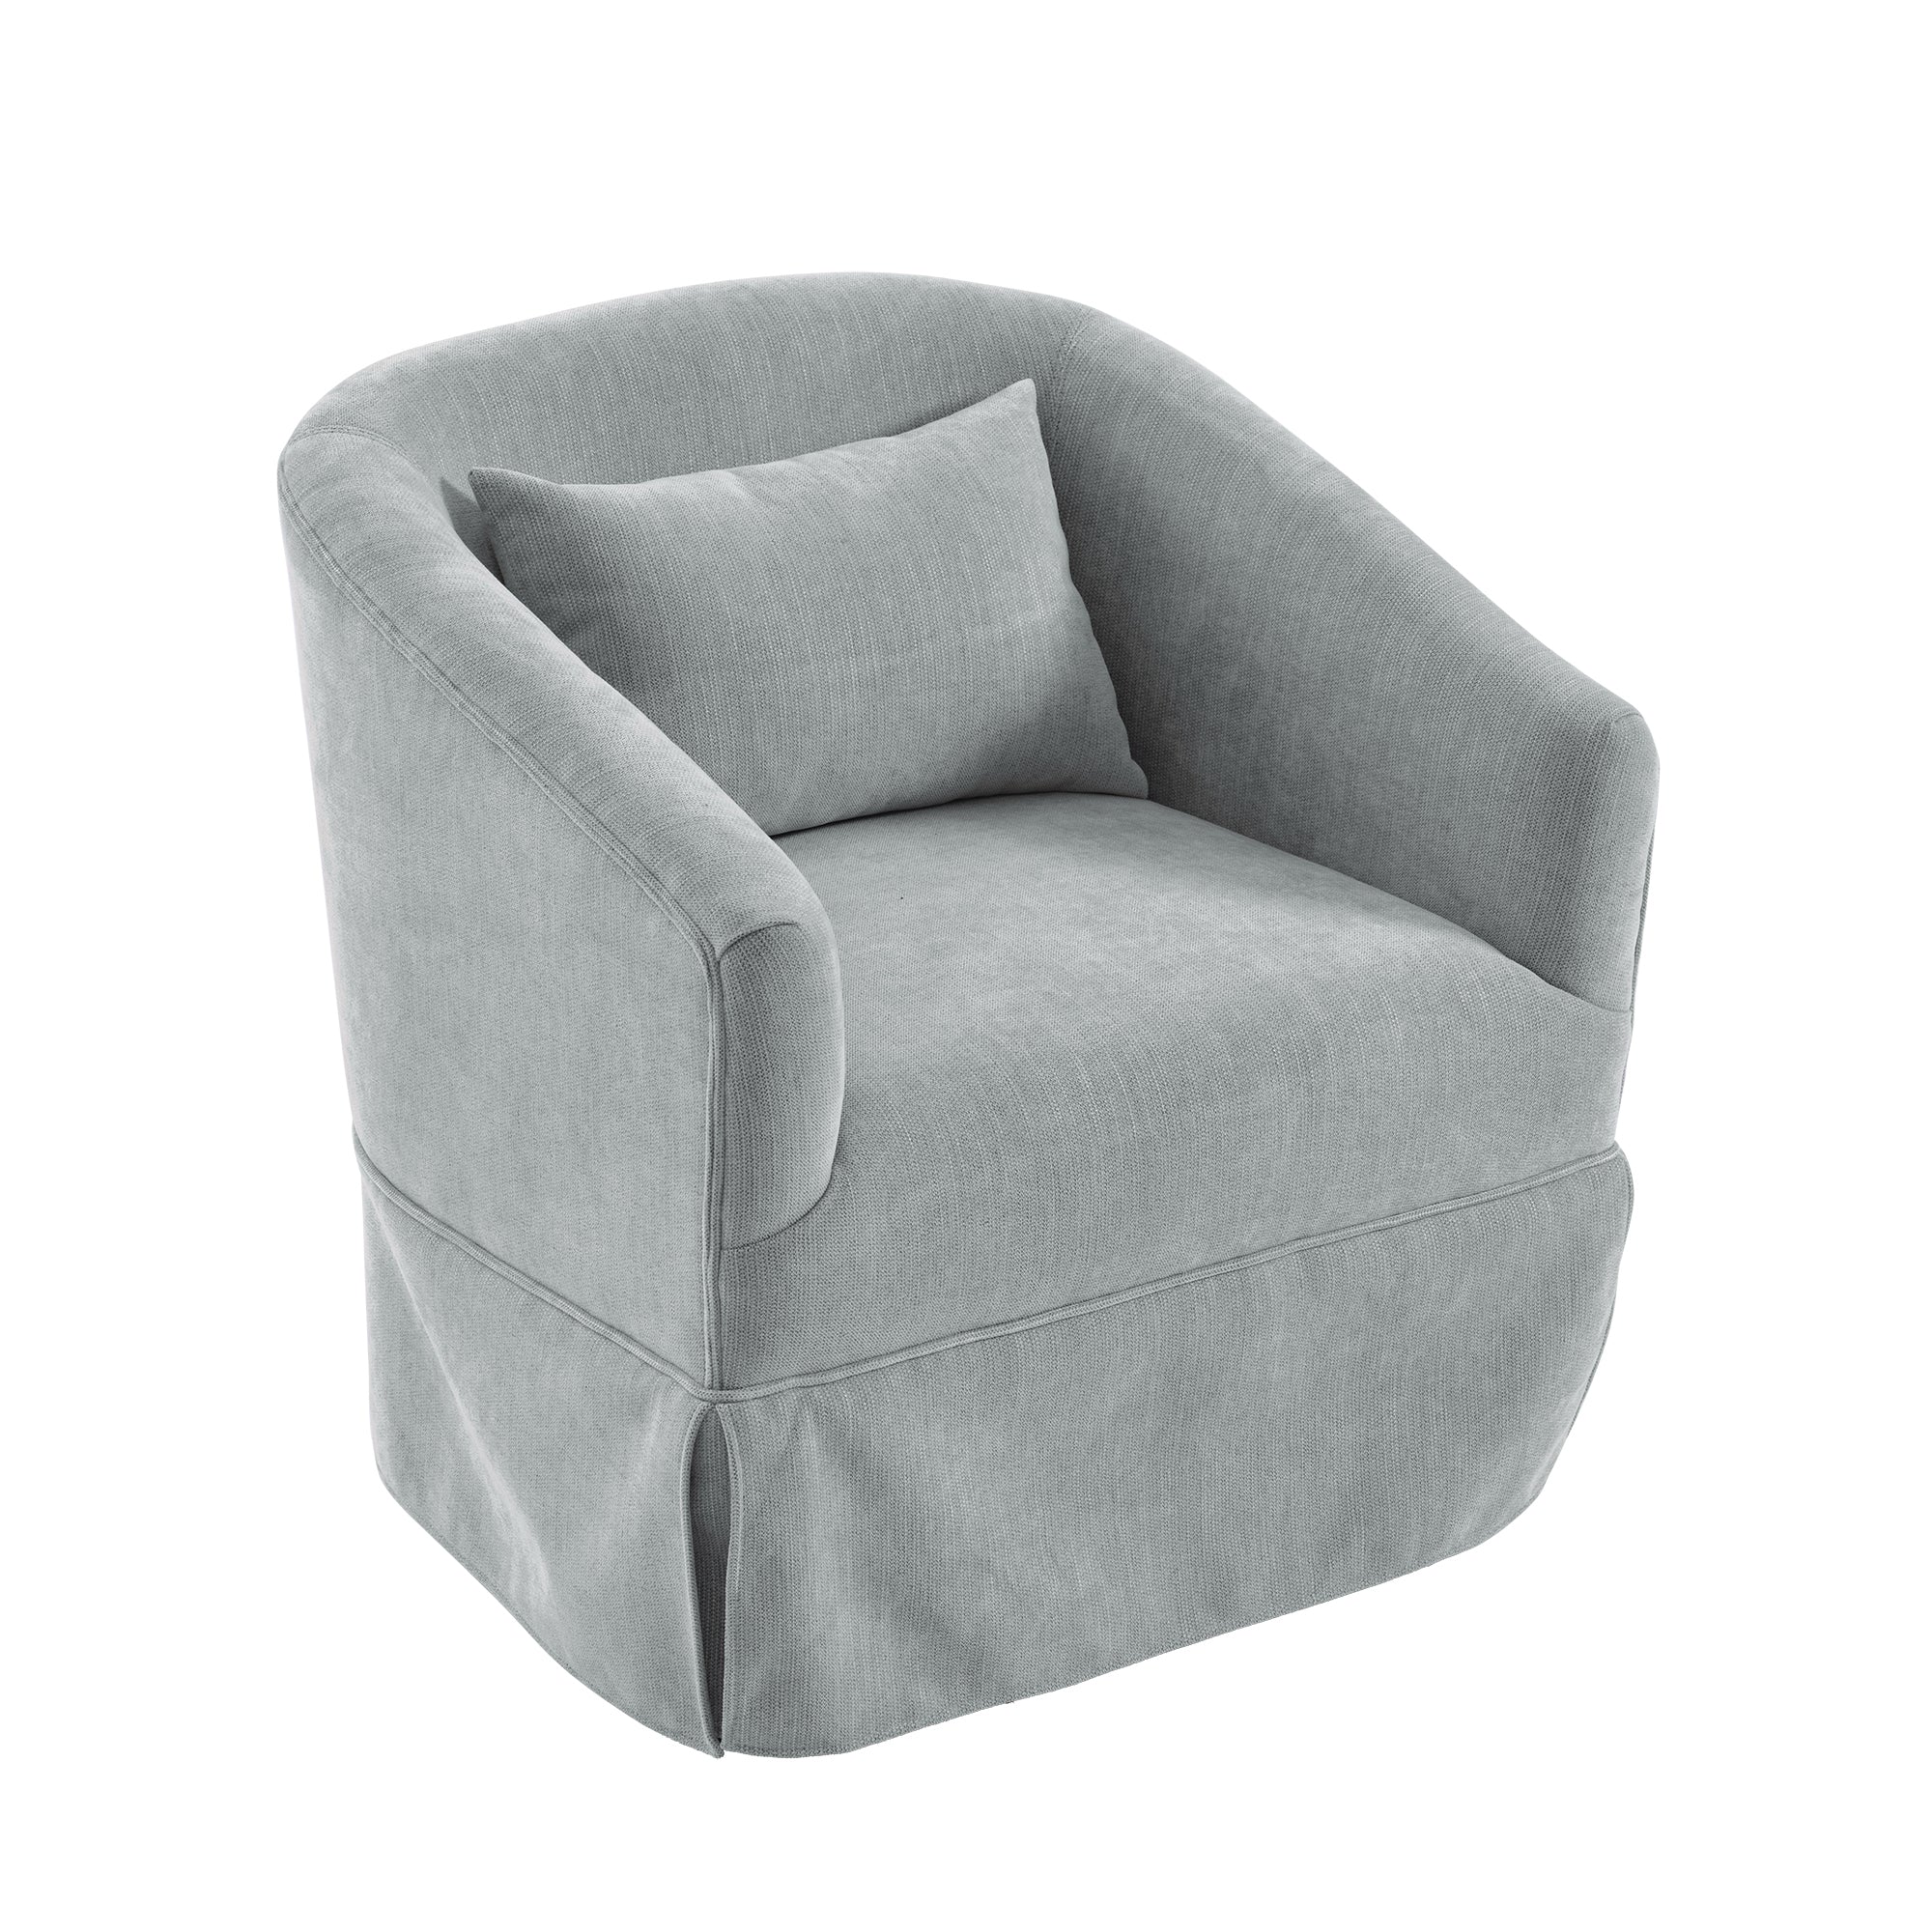 360 degree Swivel Accent Armchair Linen Blend Orange mint green-upholstered